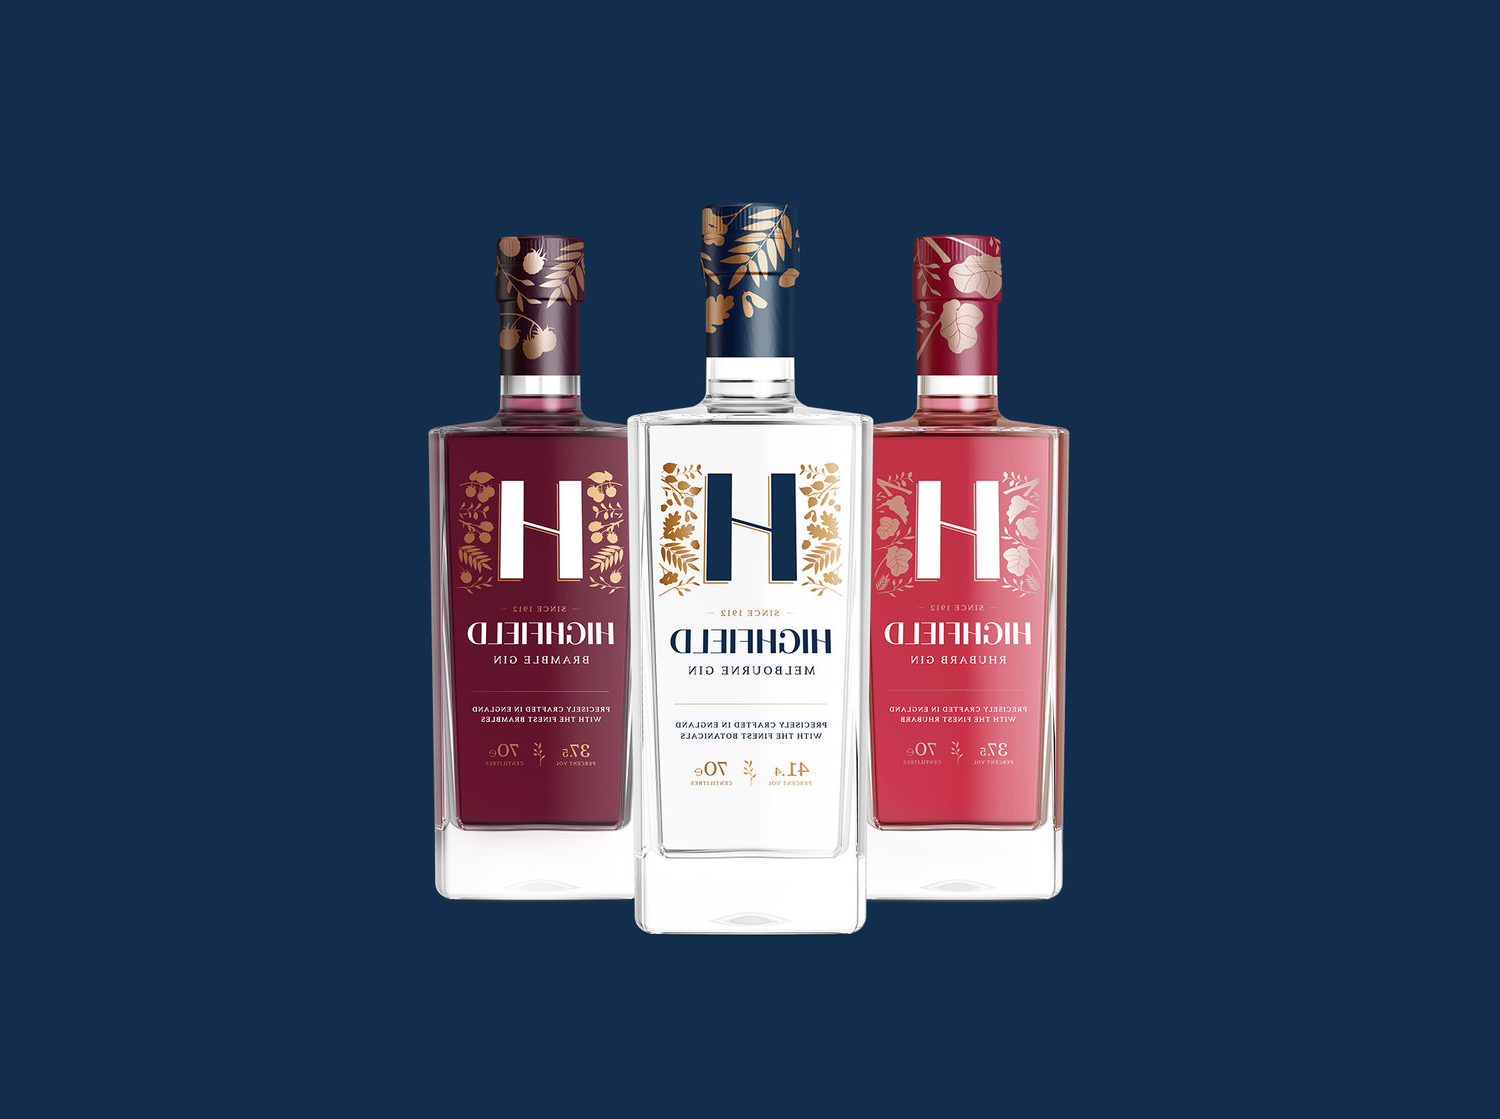 Highfield Gin酒的品牌和包装设计(图1)